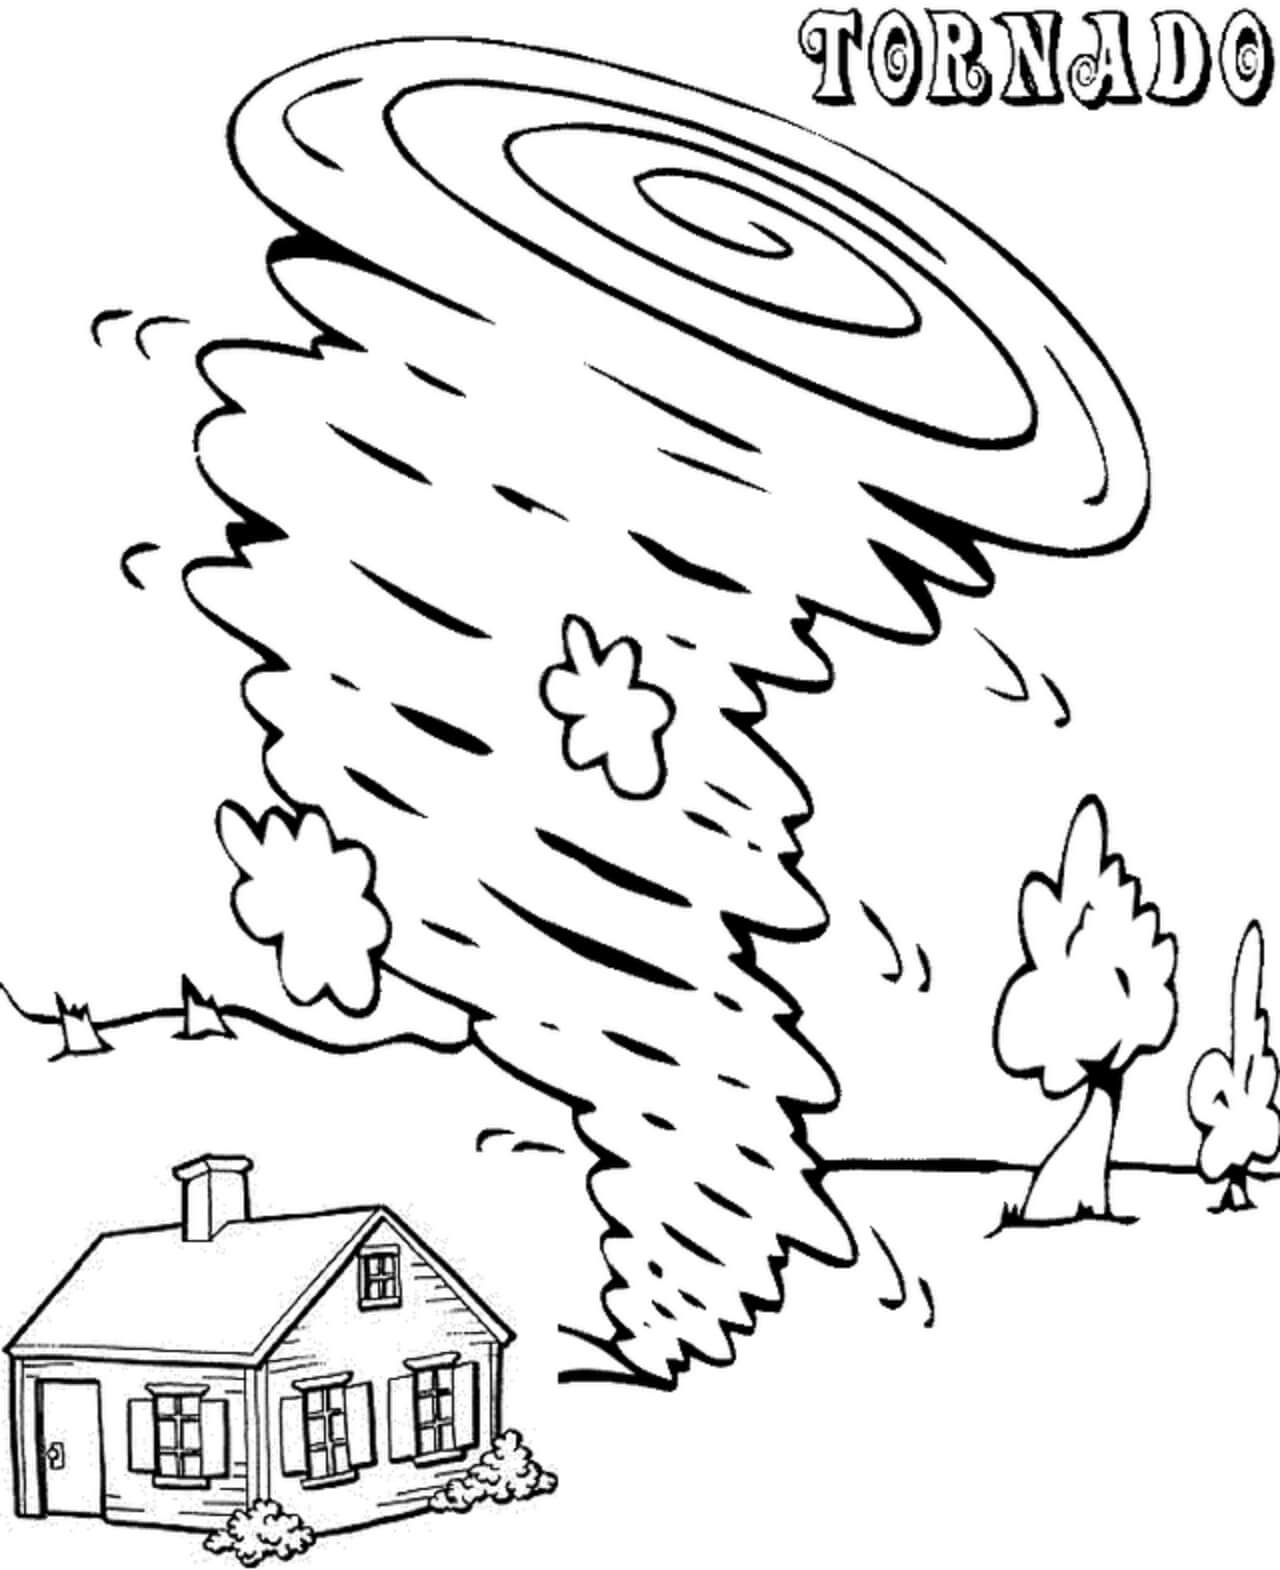 Tornado met huis en bomen